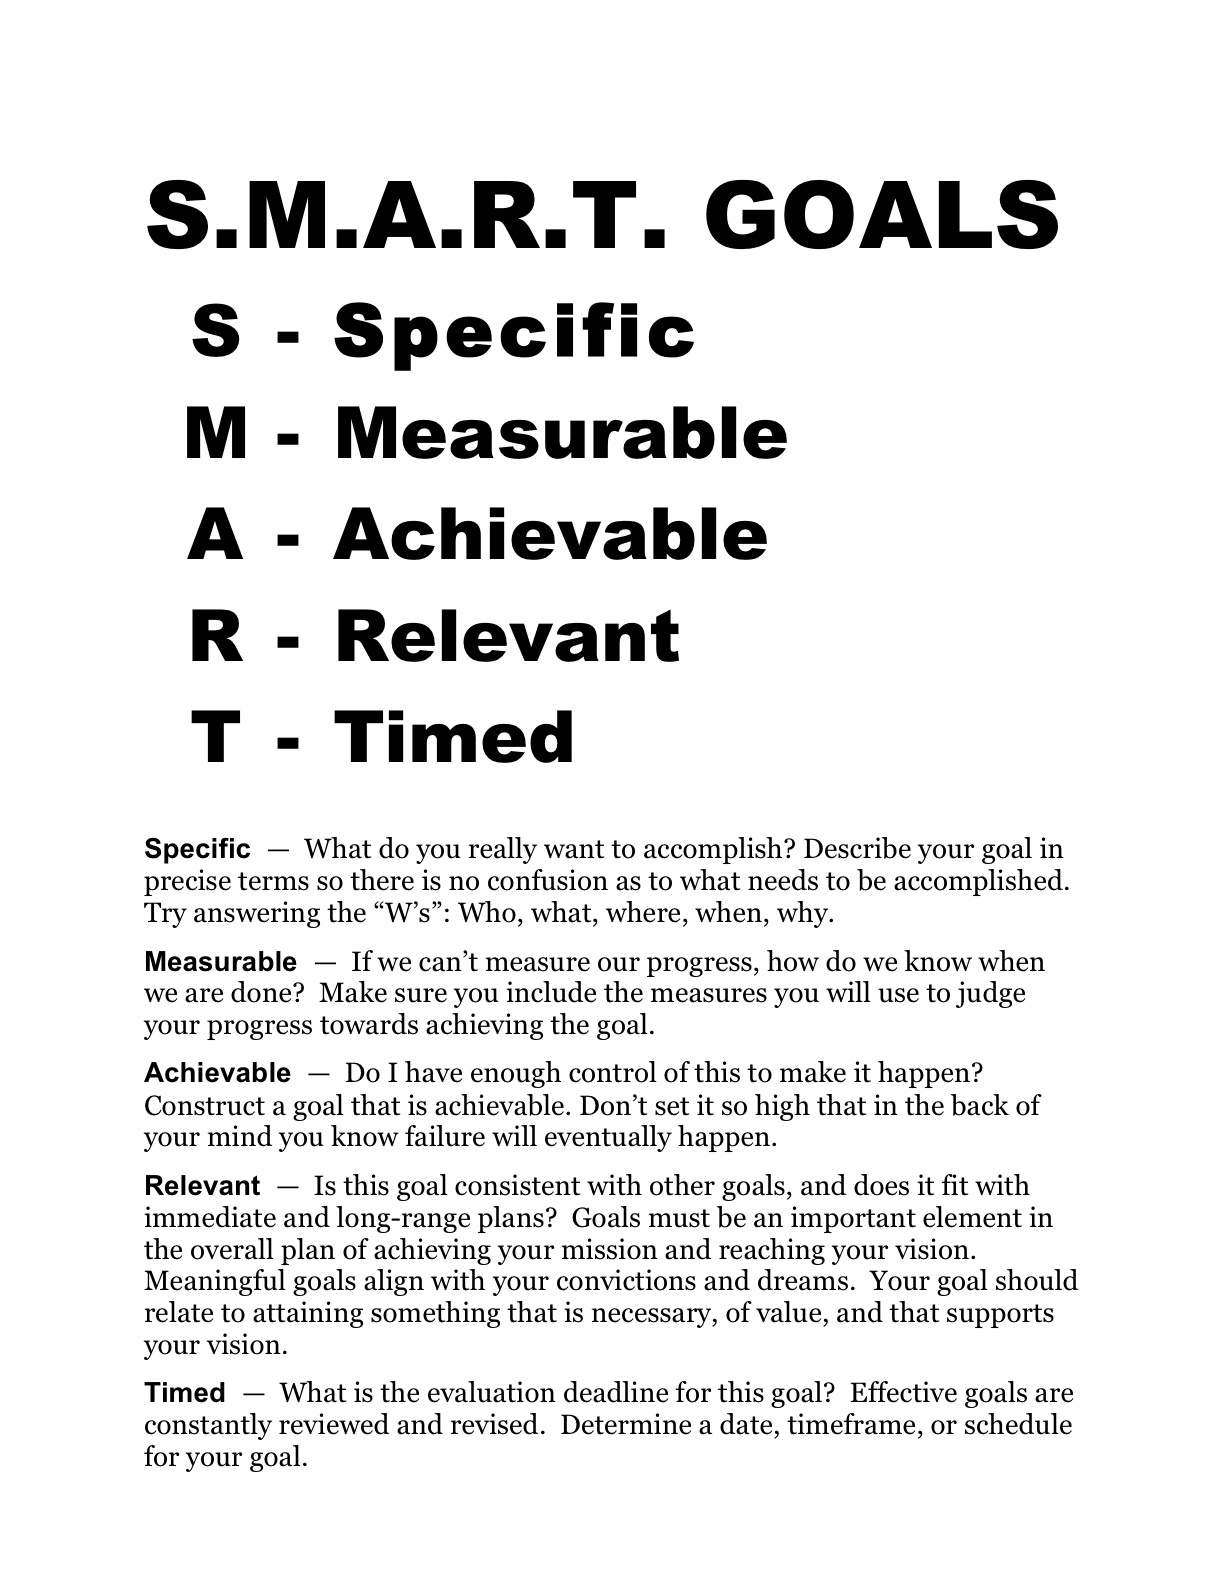 Smart Goal Worksheet PDF Image